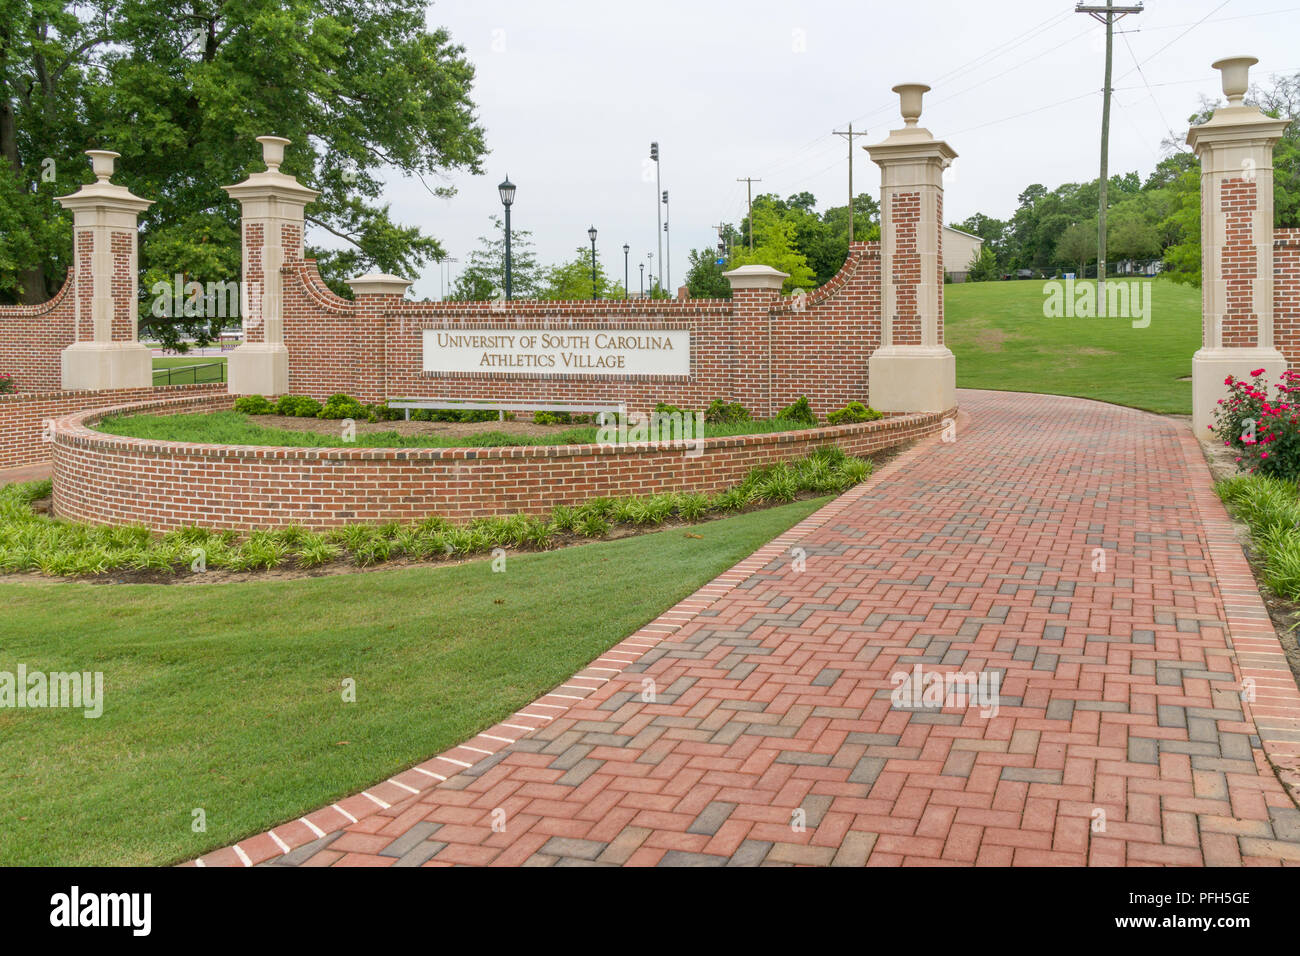 COLUMBIA, SC/USA Juni 5, 2018: Universität von South Carolina Athletik Dorf Eingang auf dem Campus der Universität von South Carolina. Stockfoto